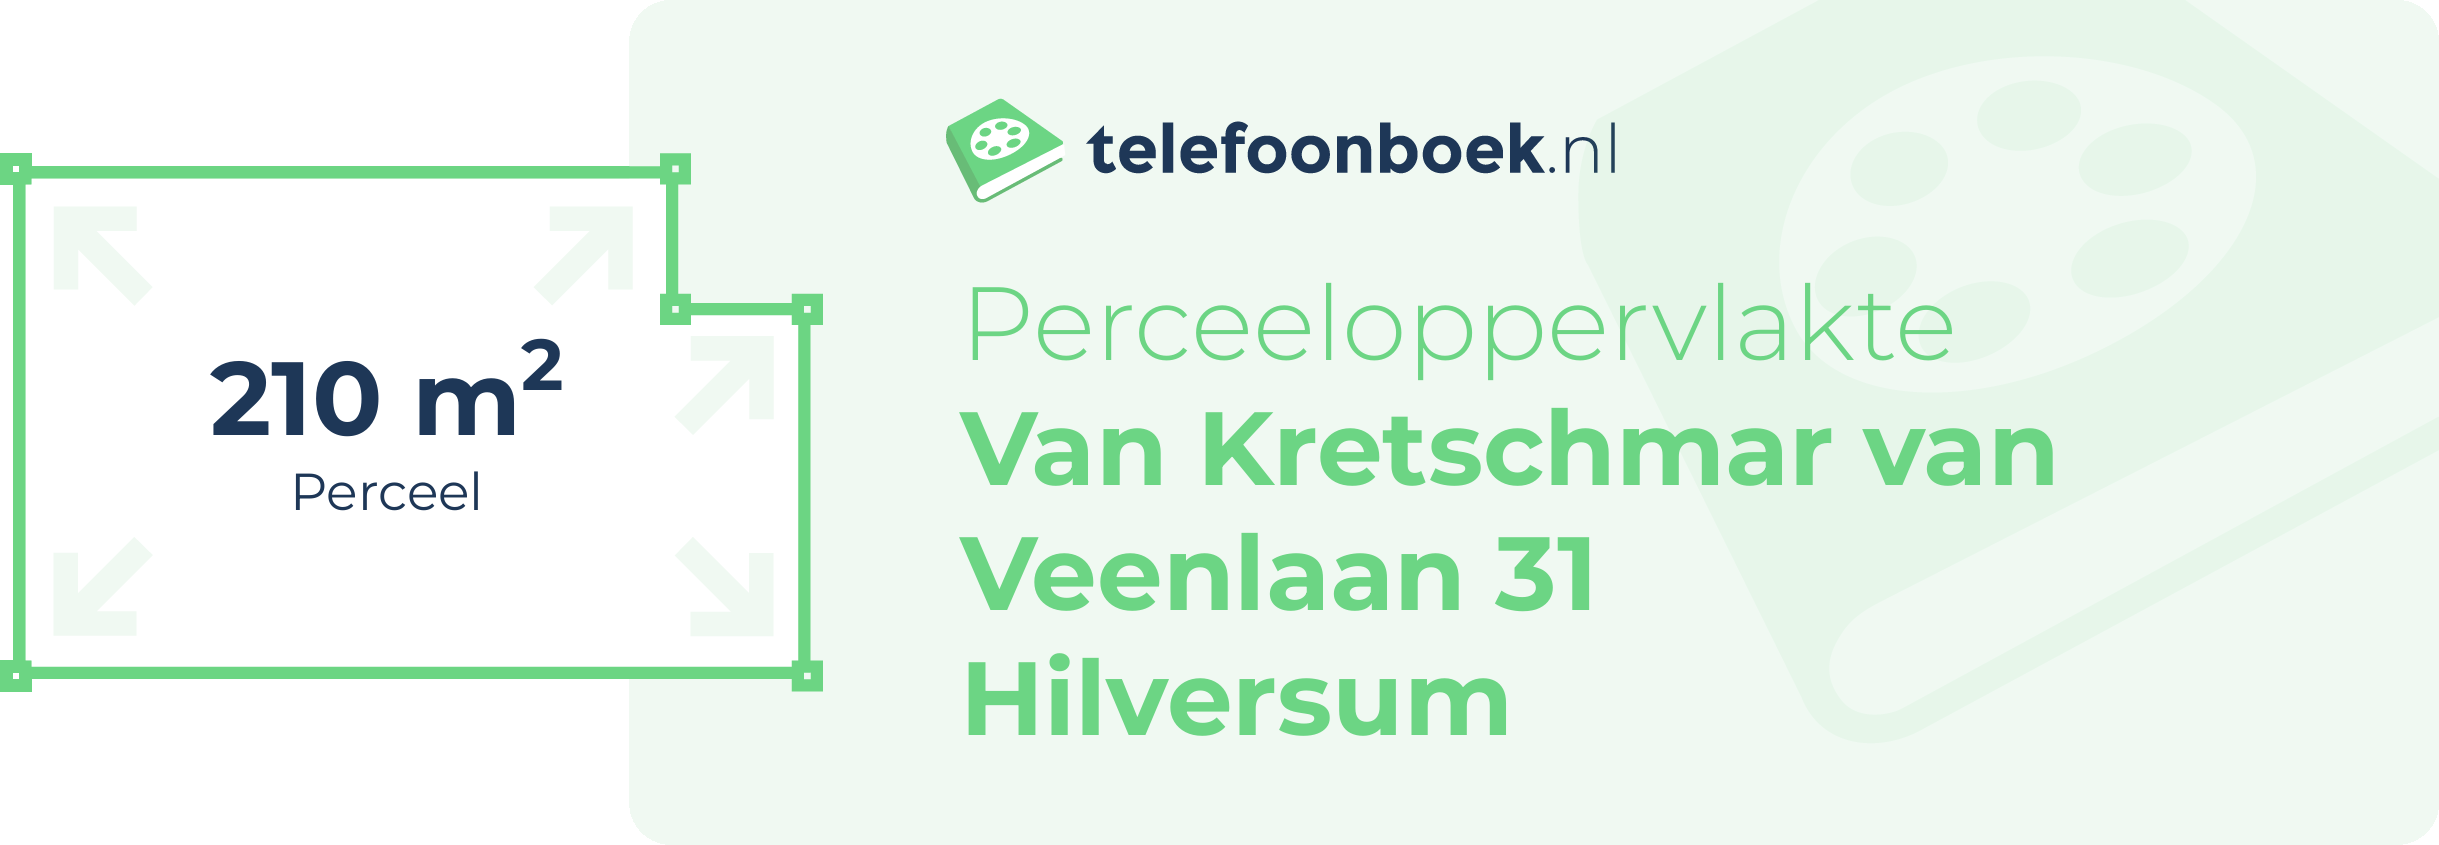 Perceeloppervlakte Van Kretschmar Van Veenlaan 31 Hilversum